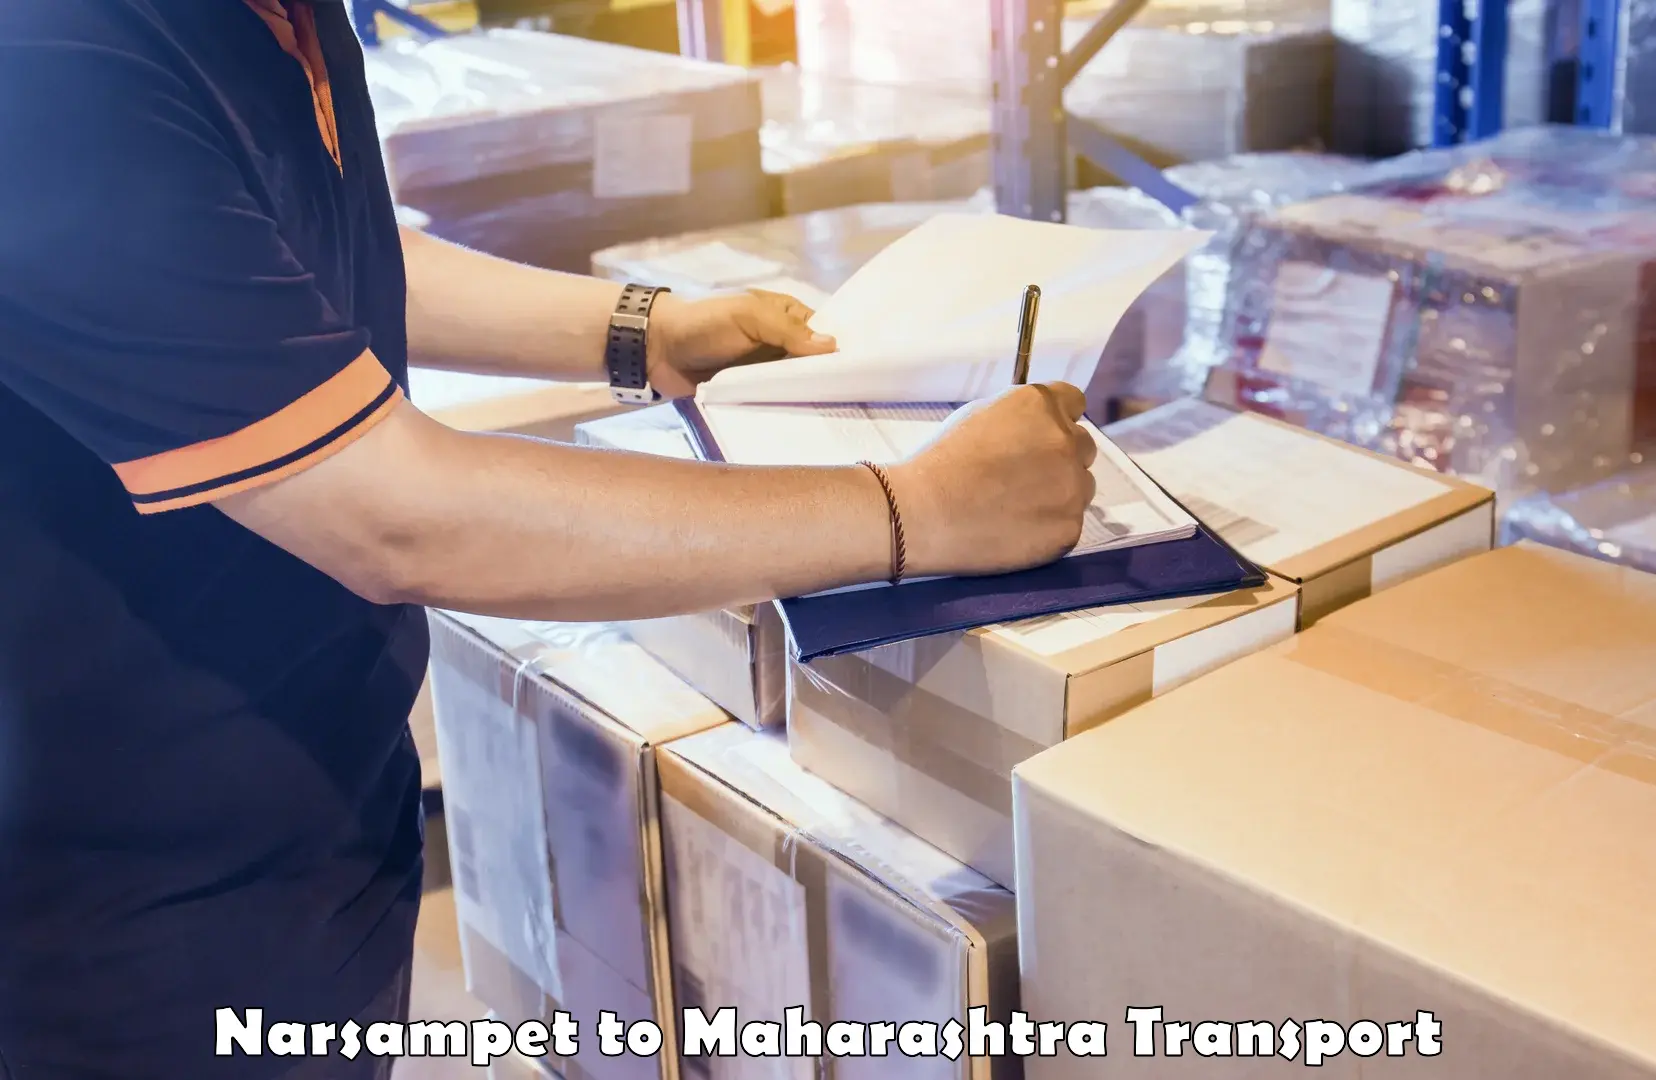 Furniture transport service in Narsampet to Nagpur